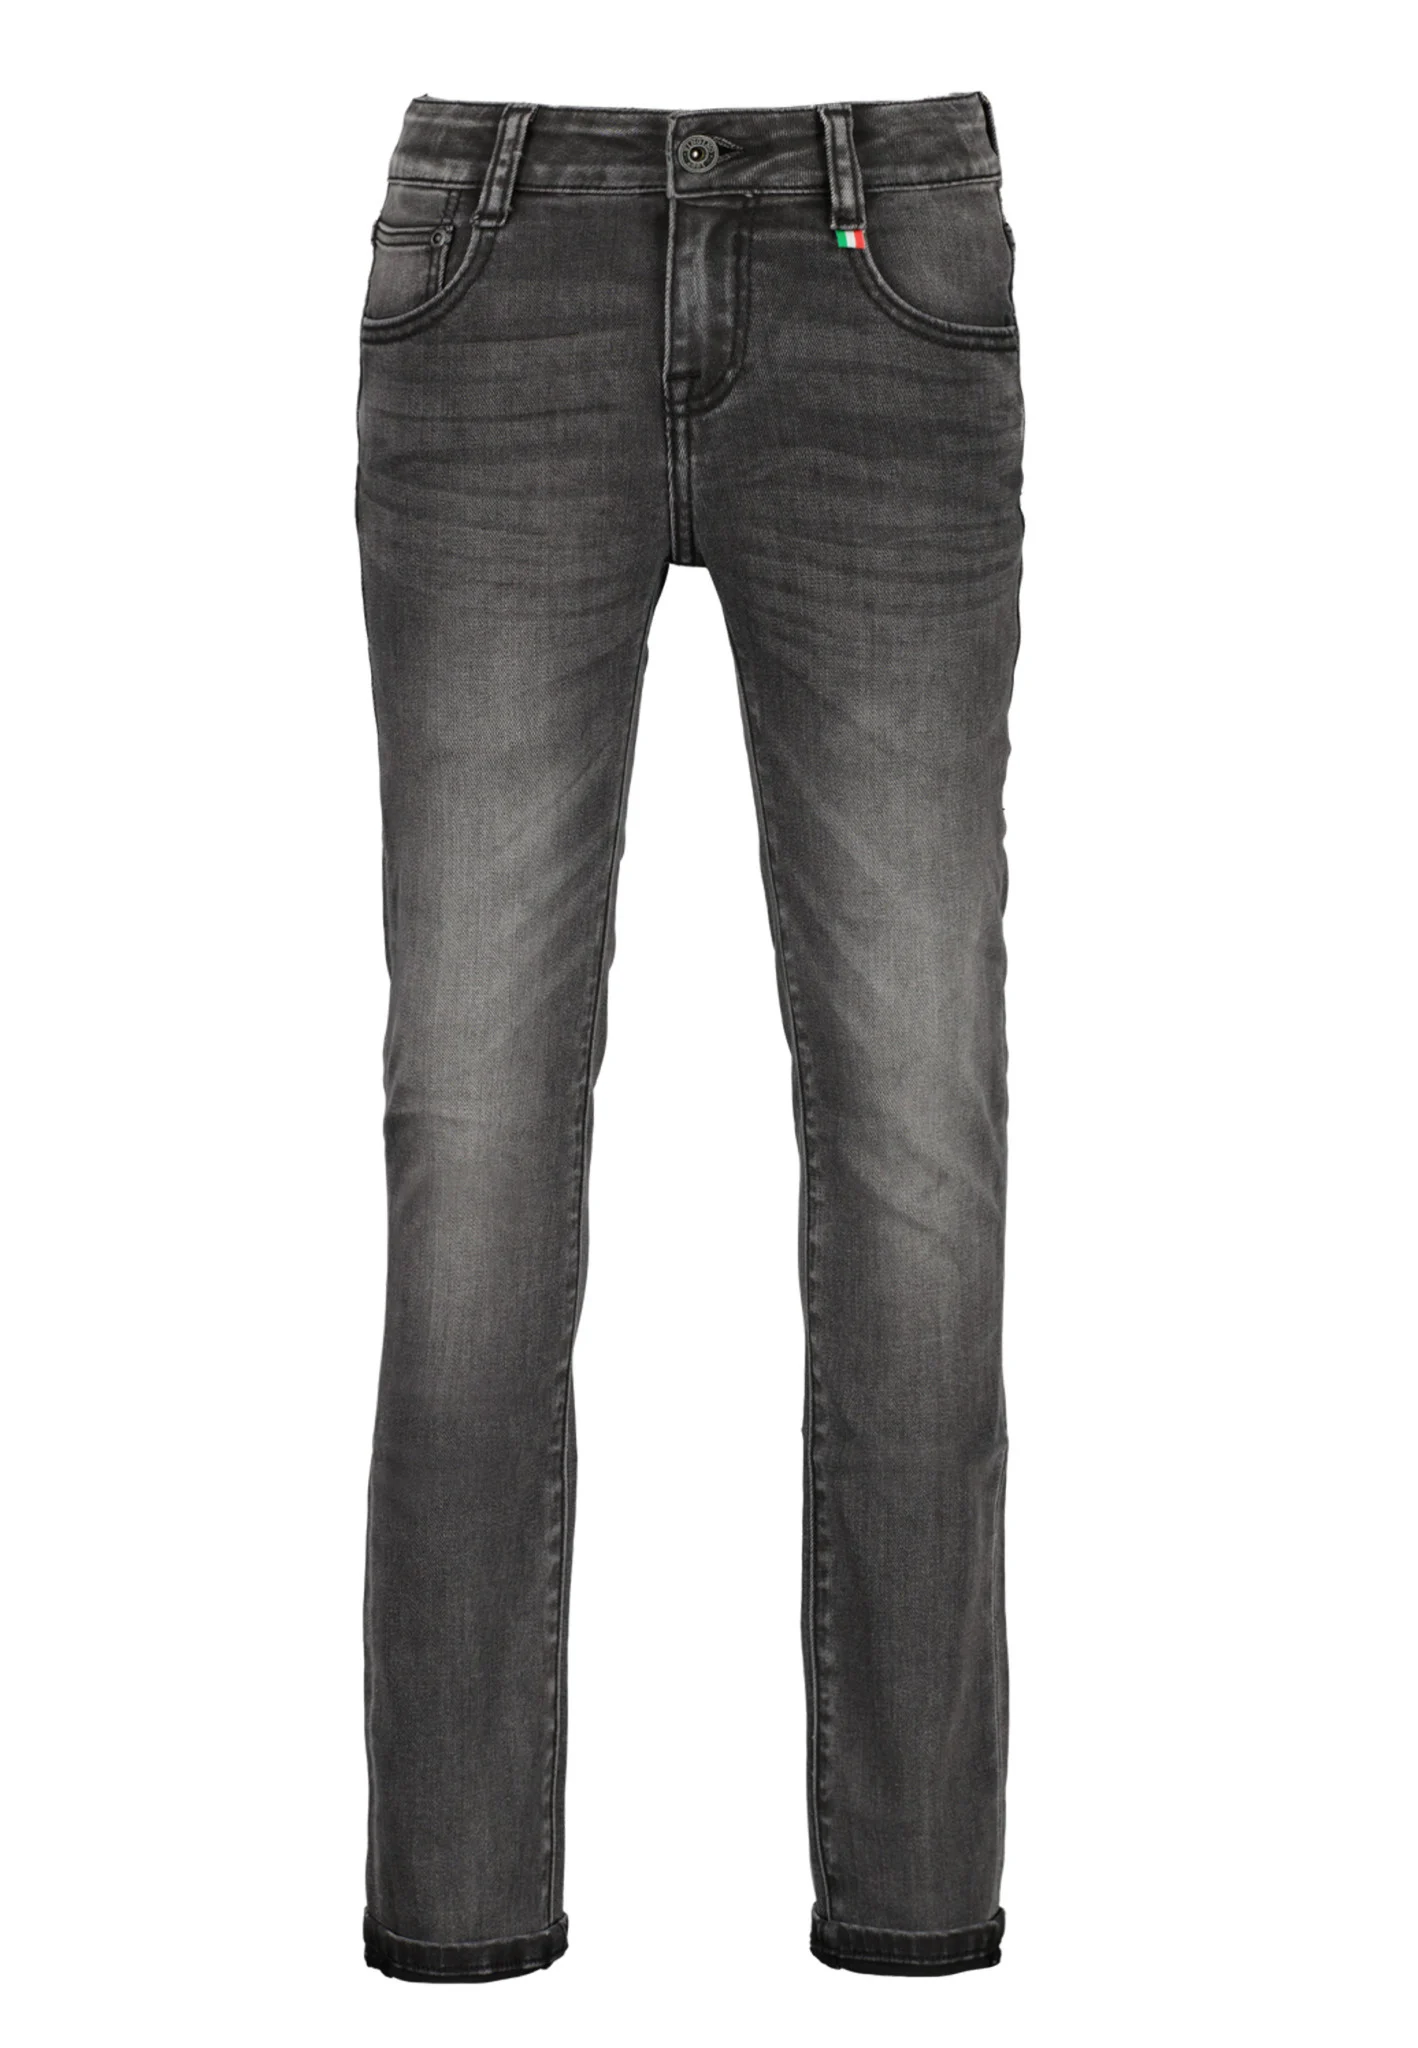 Vingino Jongens jeans diego noos slim fit dark grey vintage